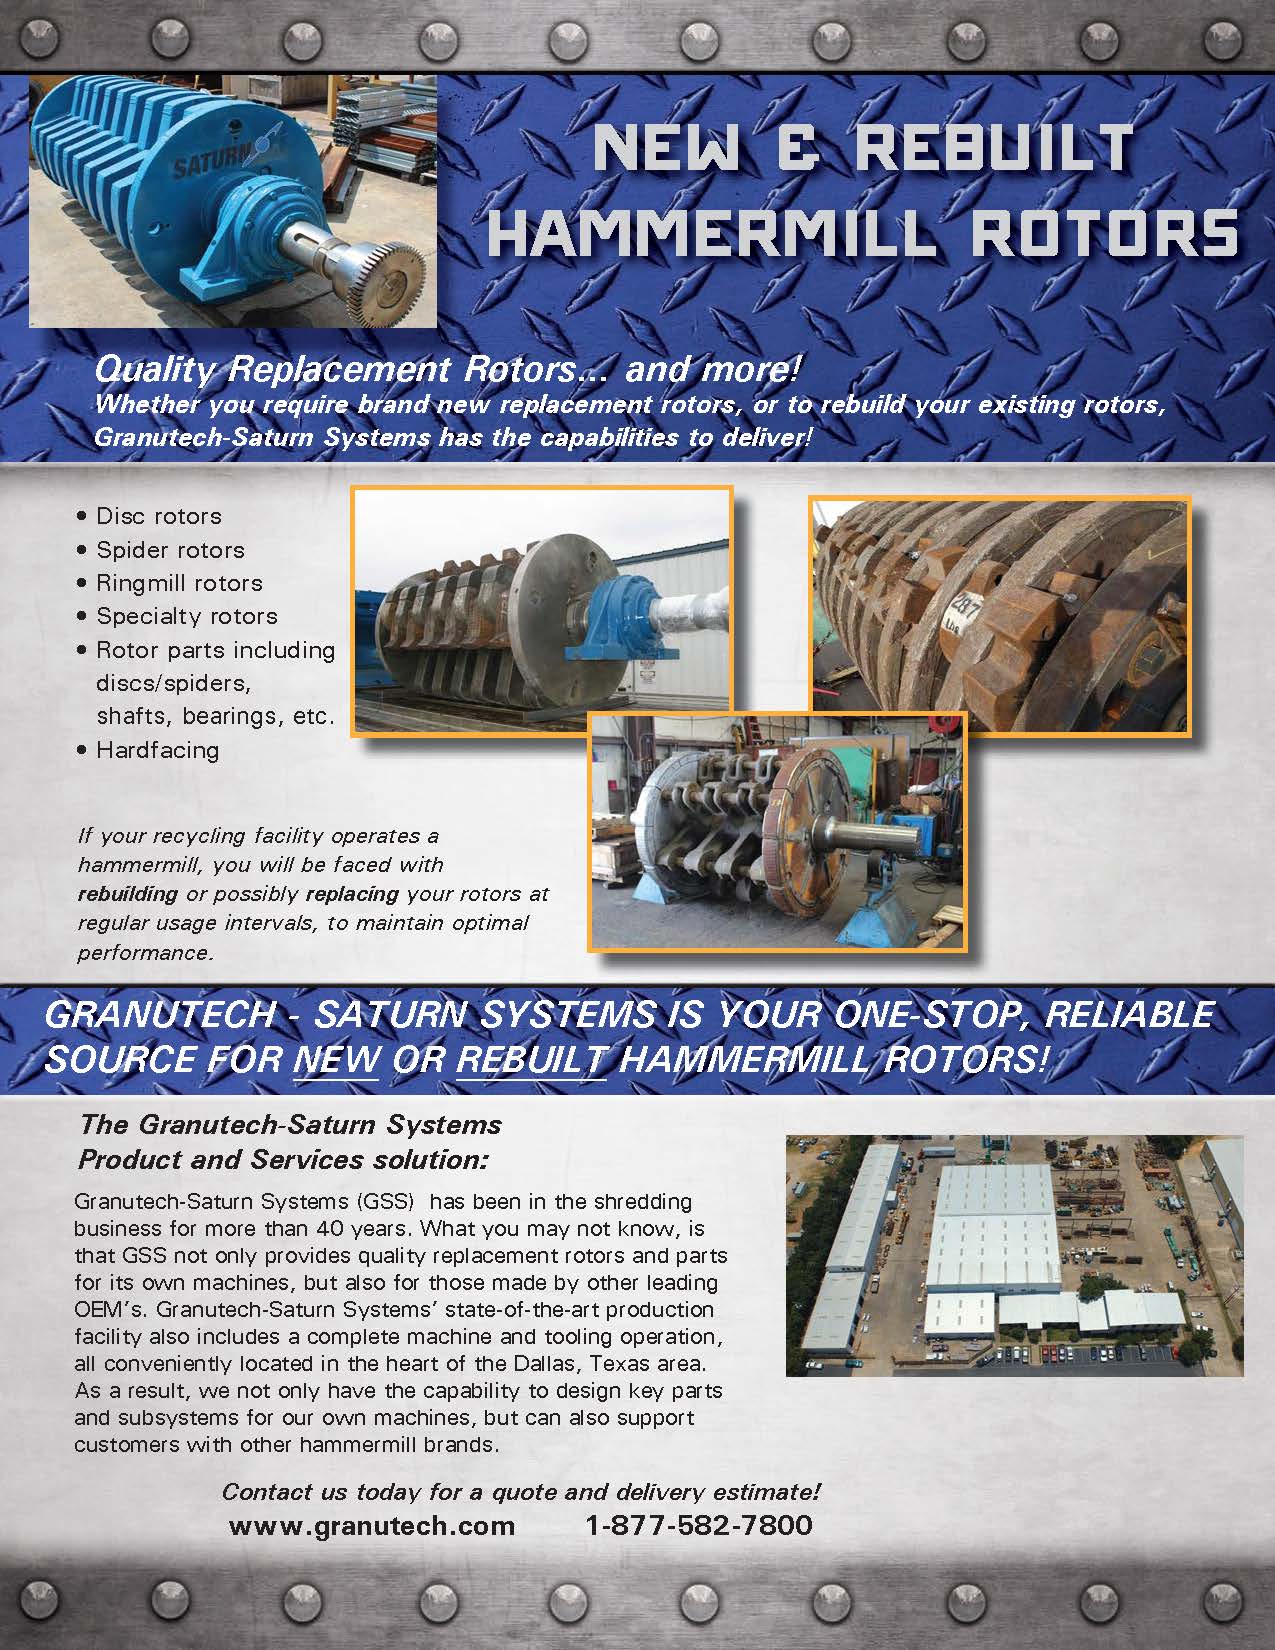 New & Rebuilt Hammermill Rotors